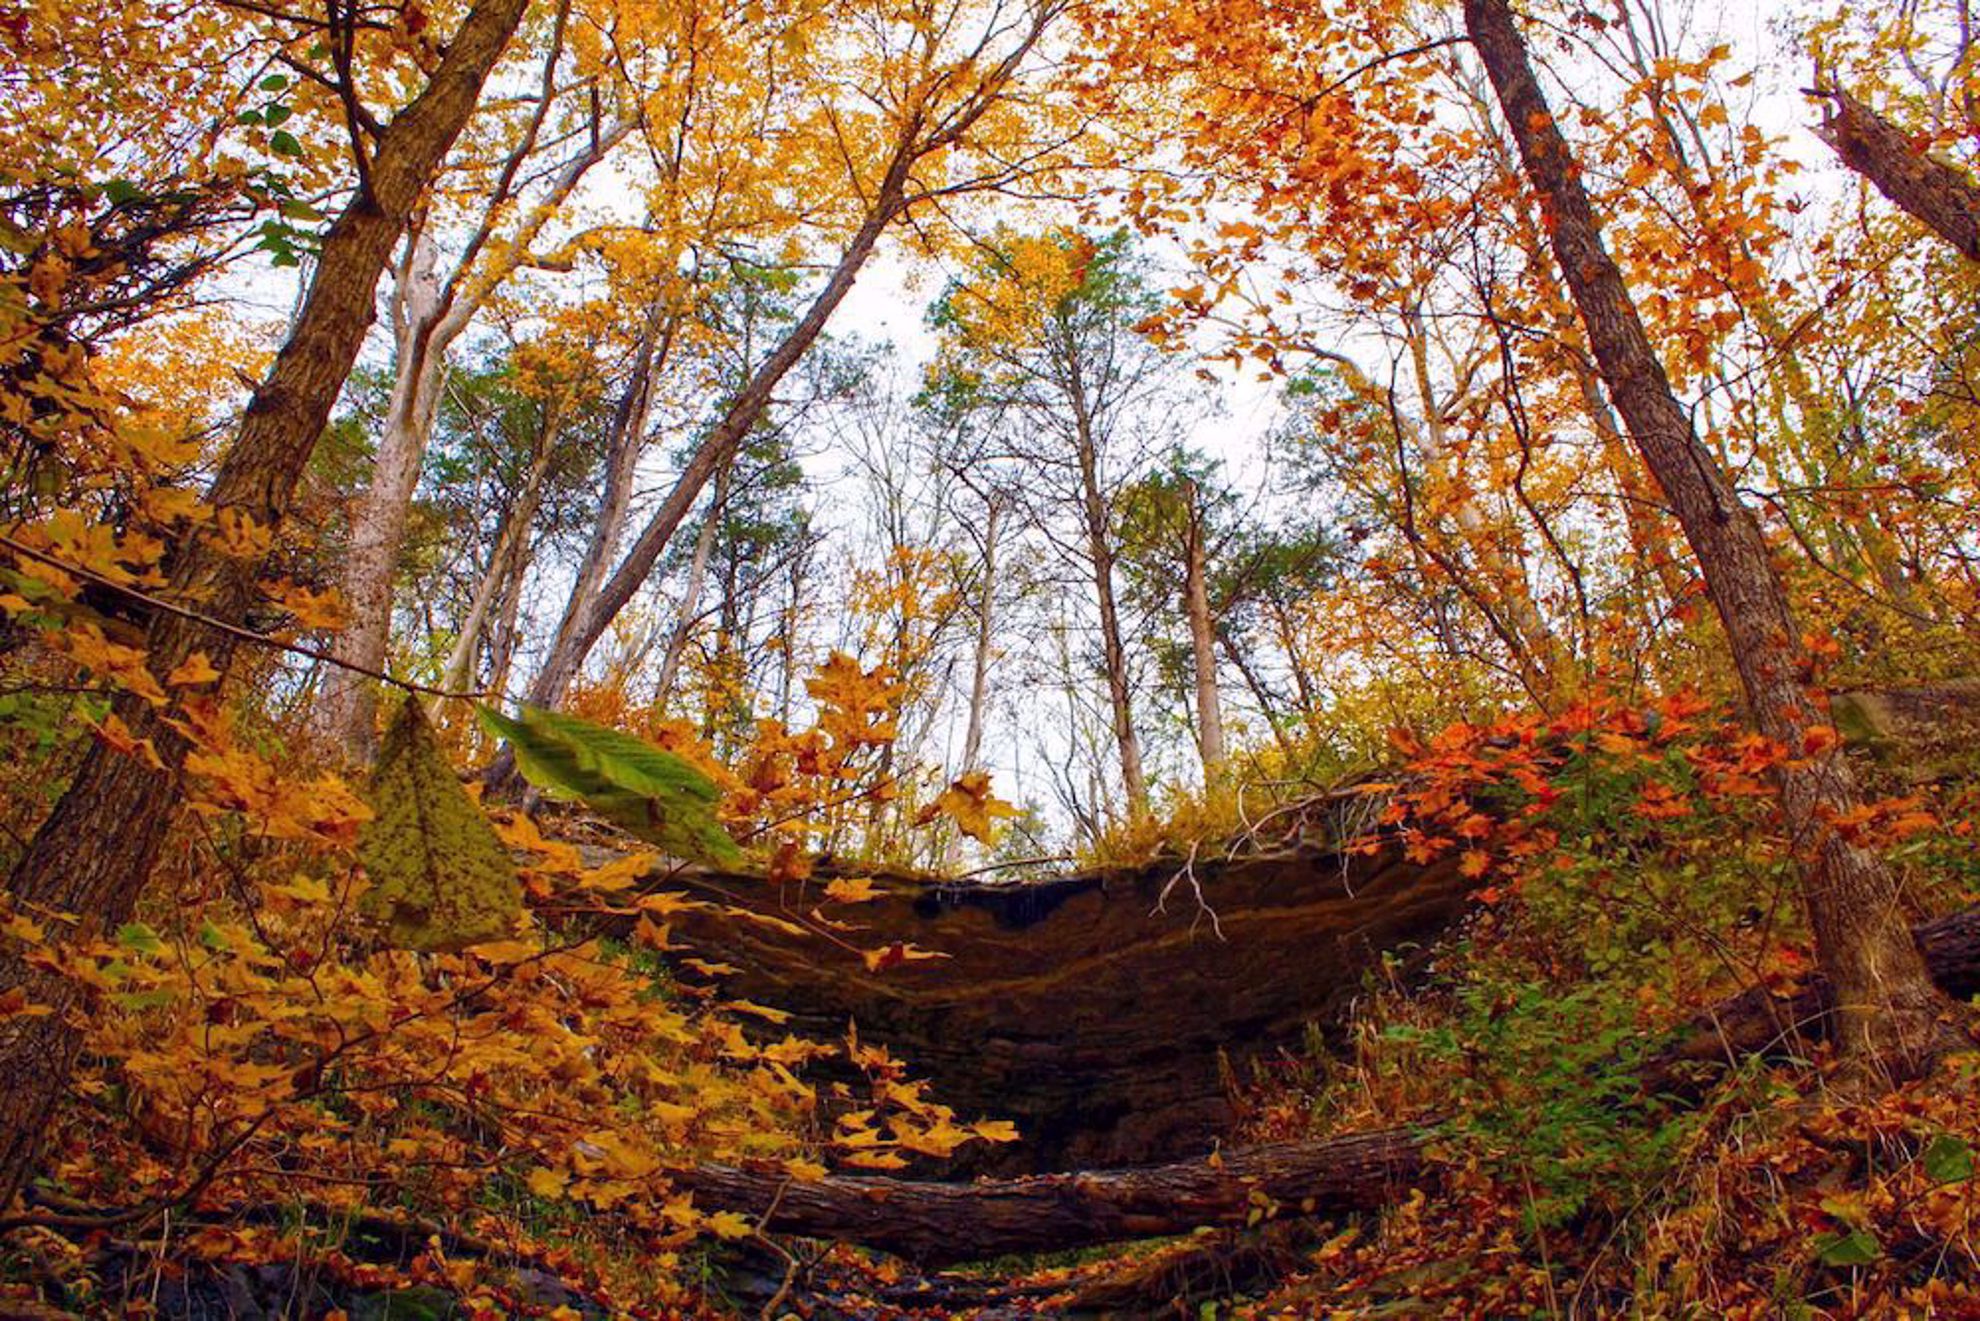 Fall leaves along Katy Trail